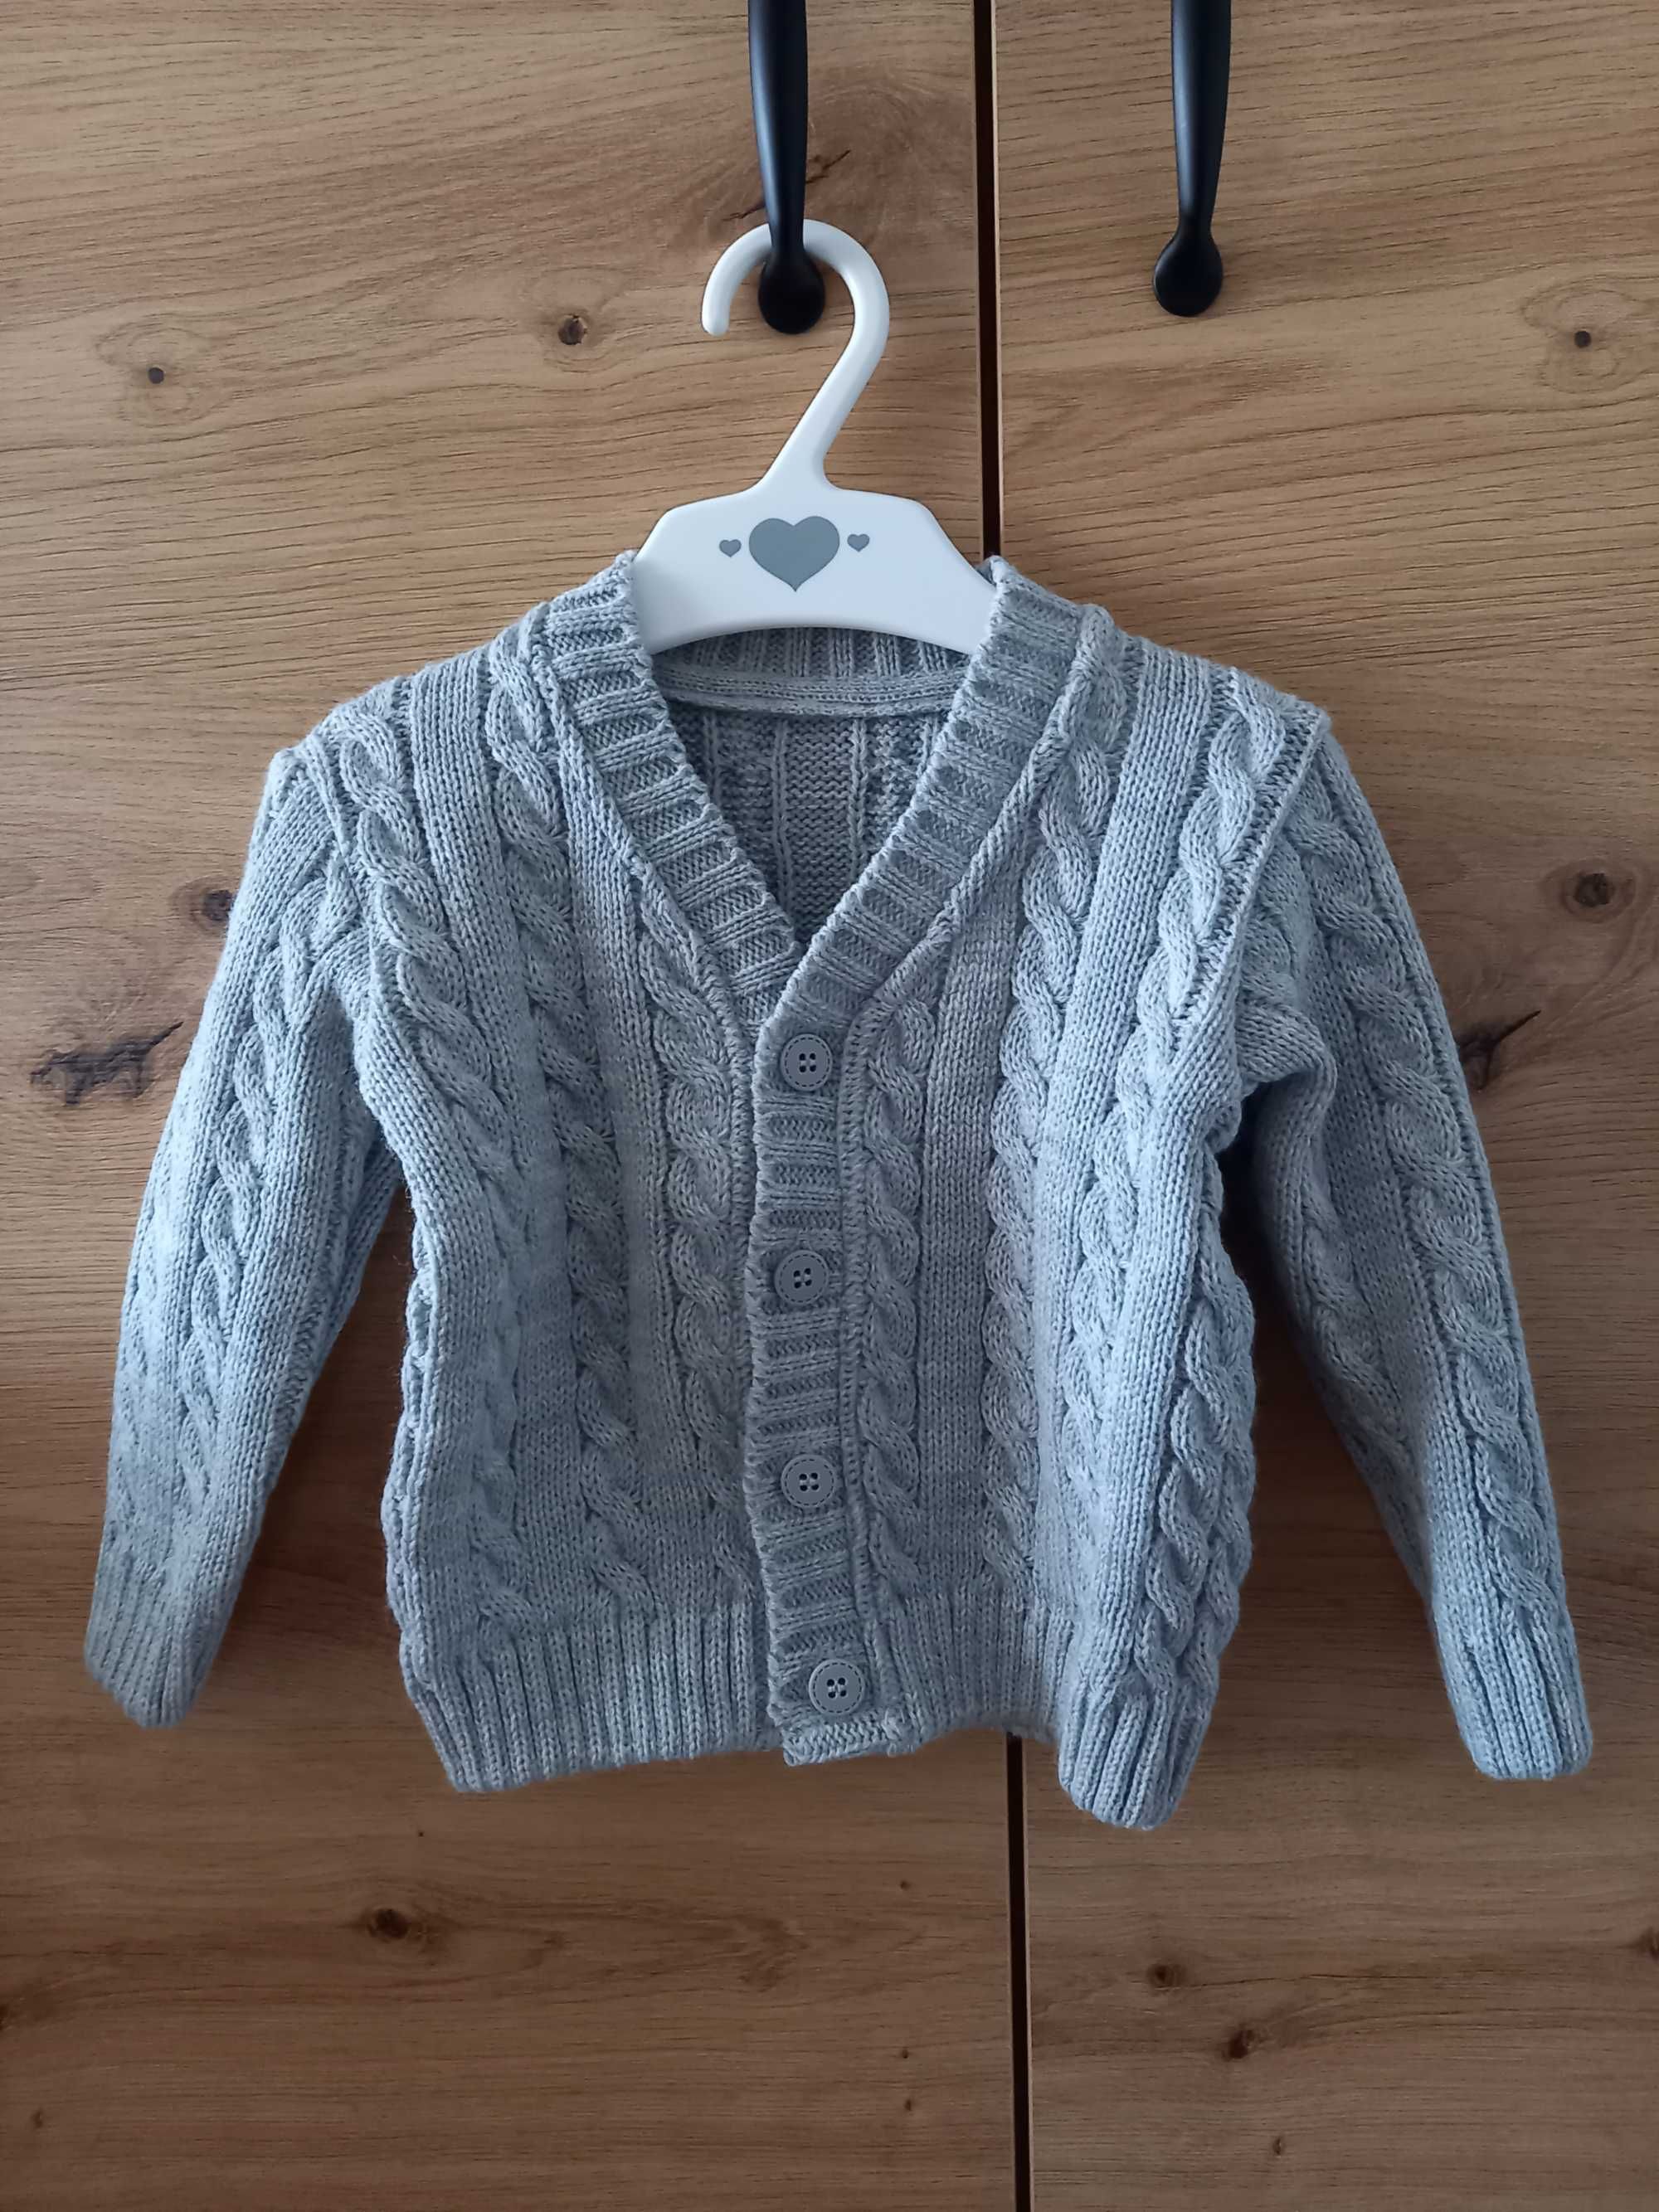 NOWY szary sweterek dla chłopca, produkt polski, Jomar, roz. 80